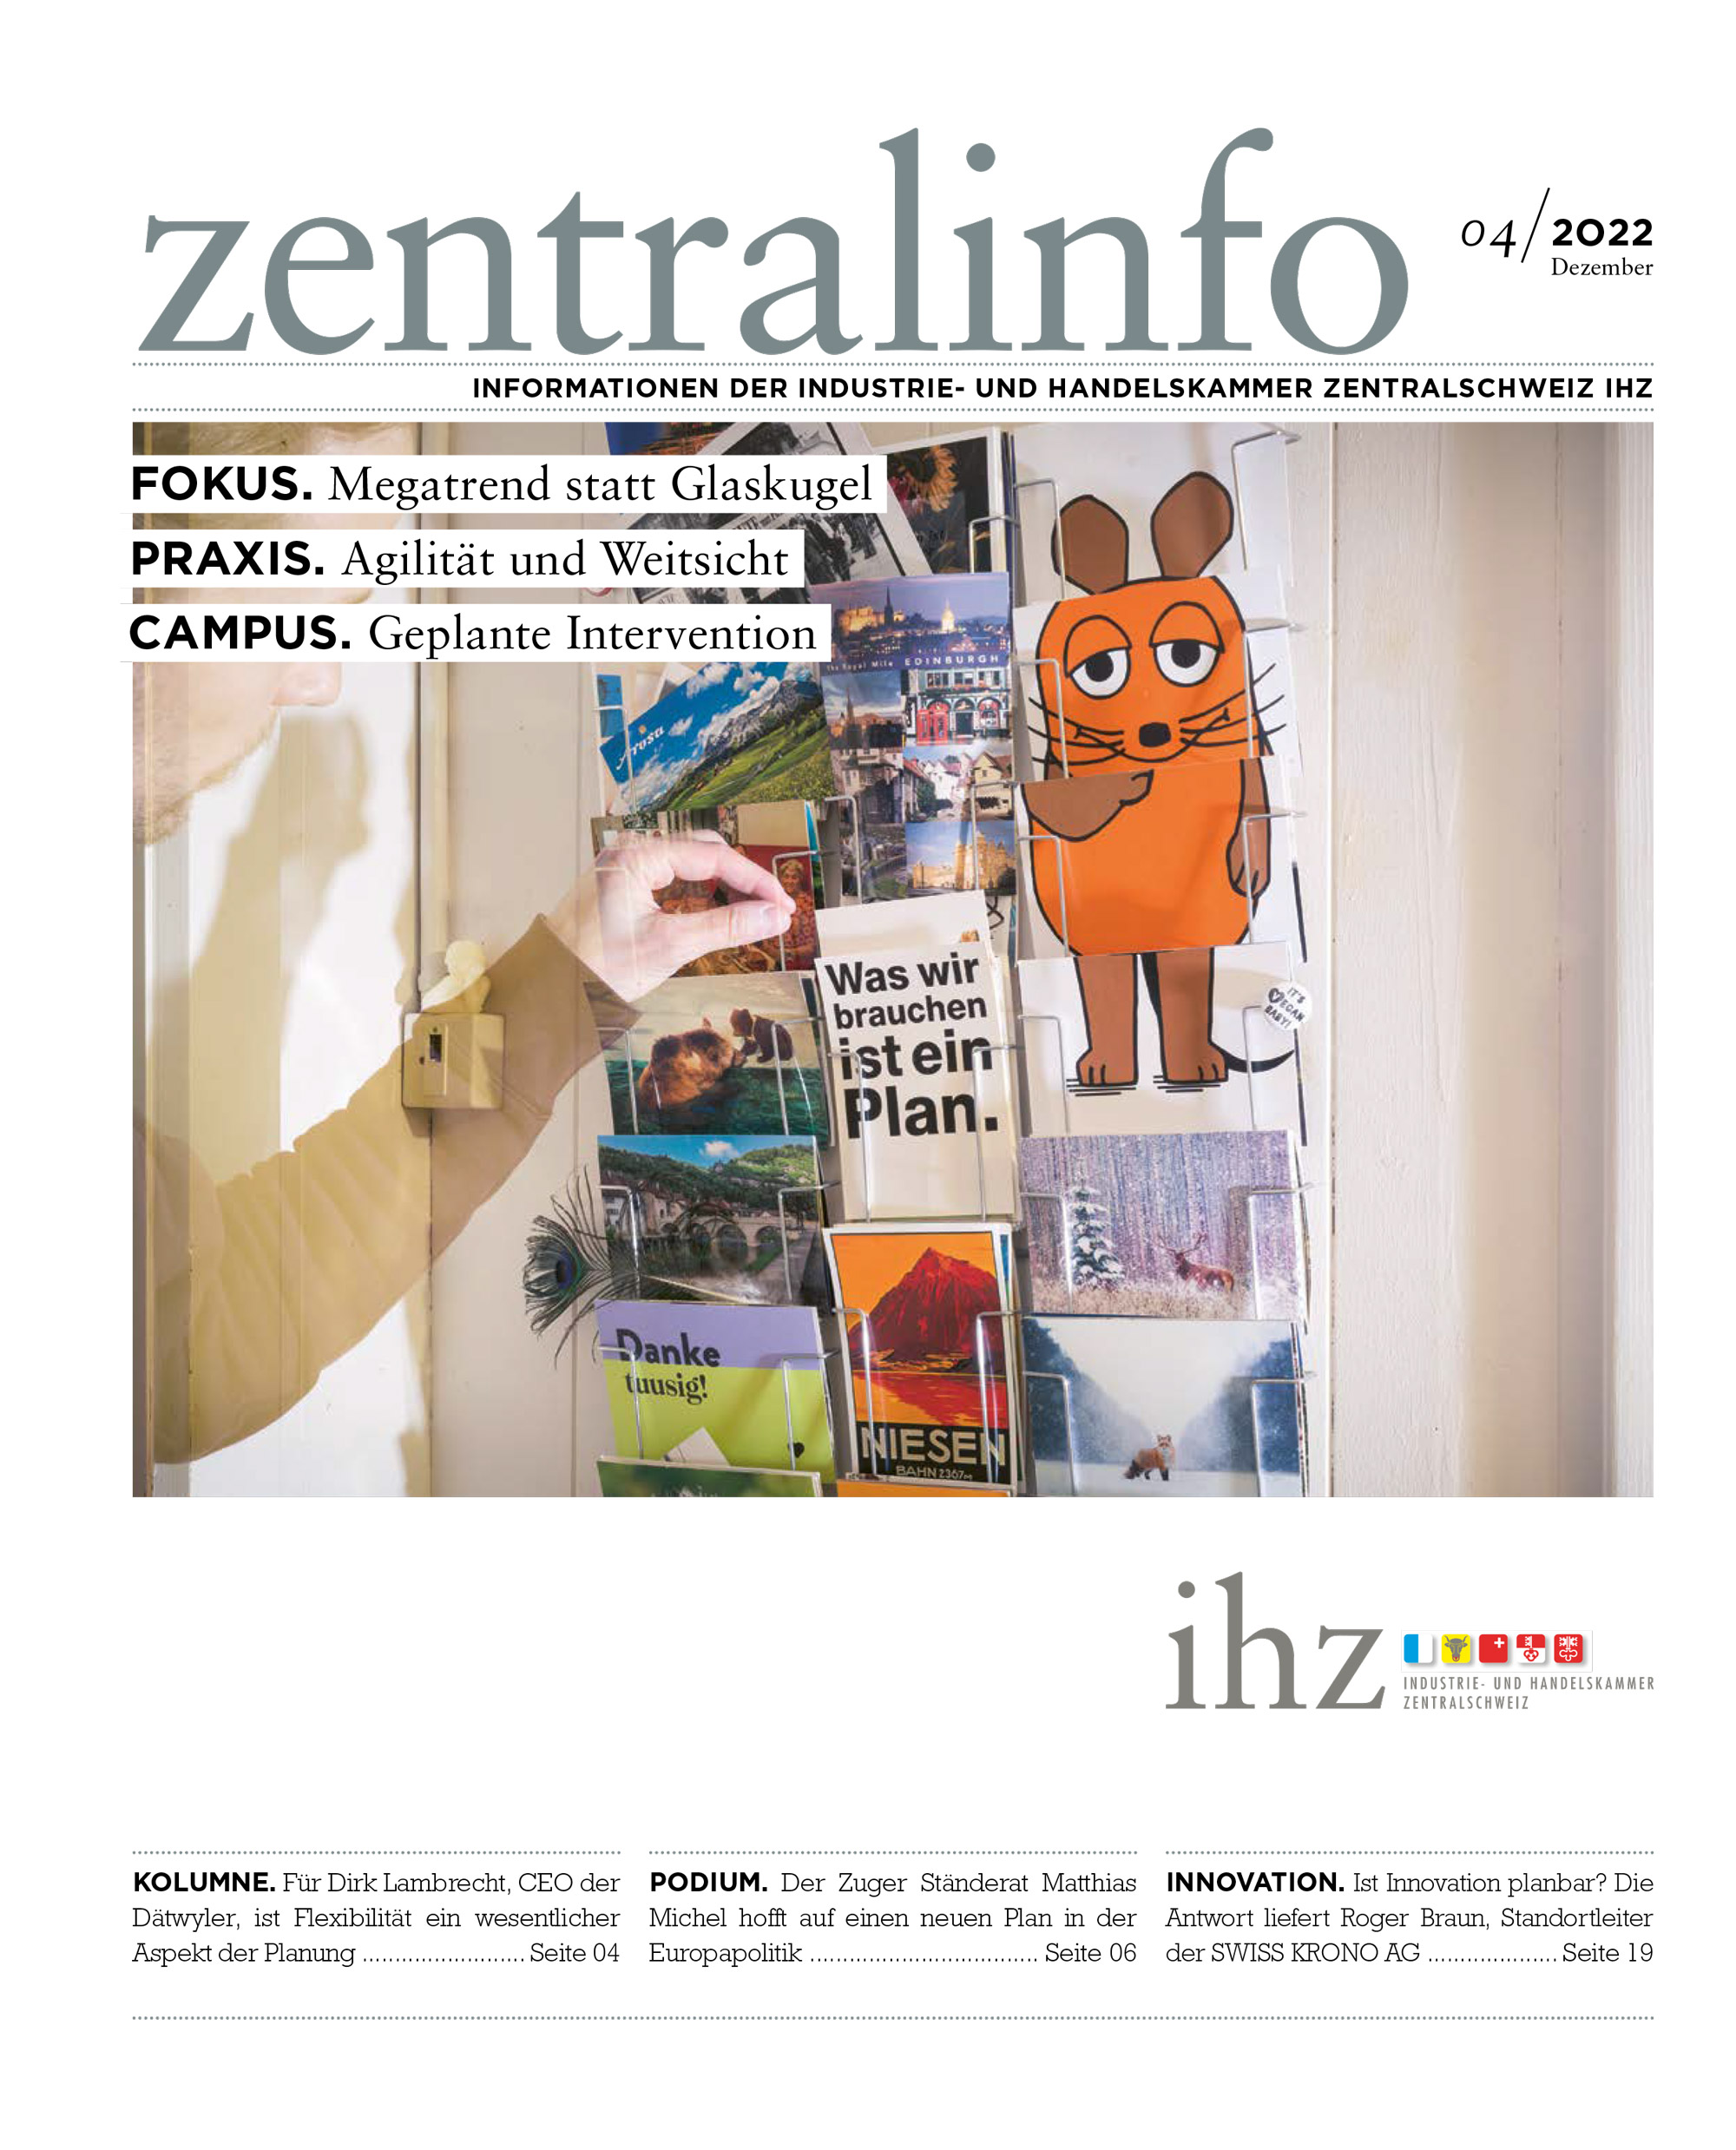 IHZ Zentralinfo, Volume 2022 Issue 04